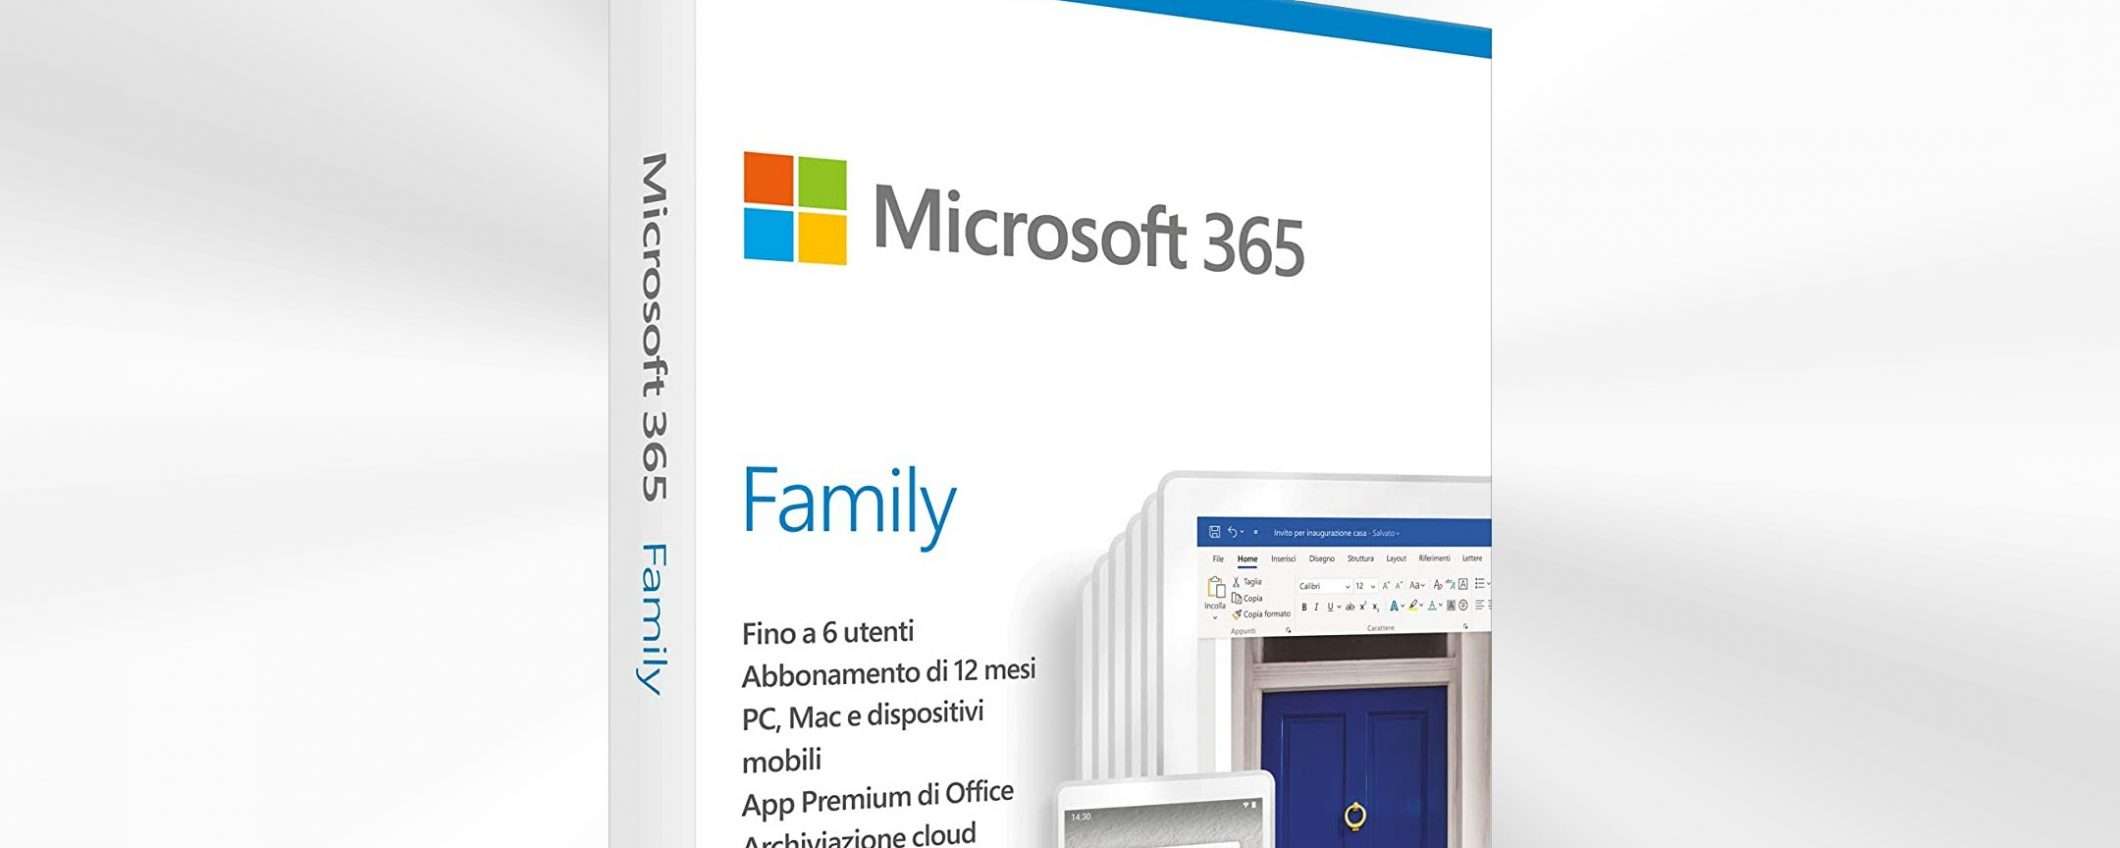 Microsoft 365, sconto del 39% su Amazon